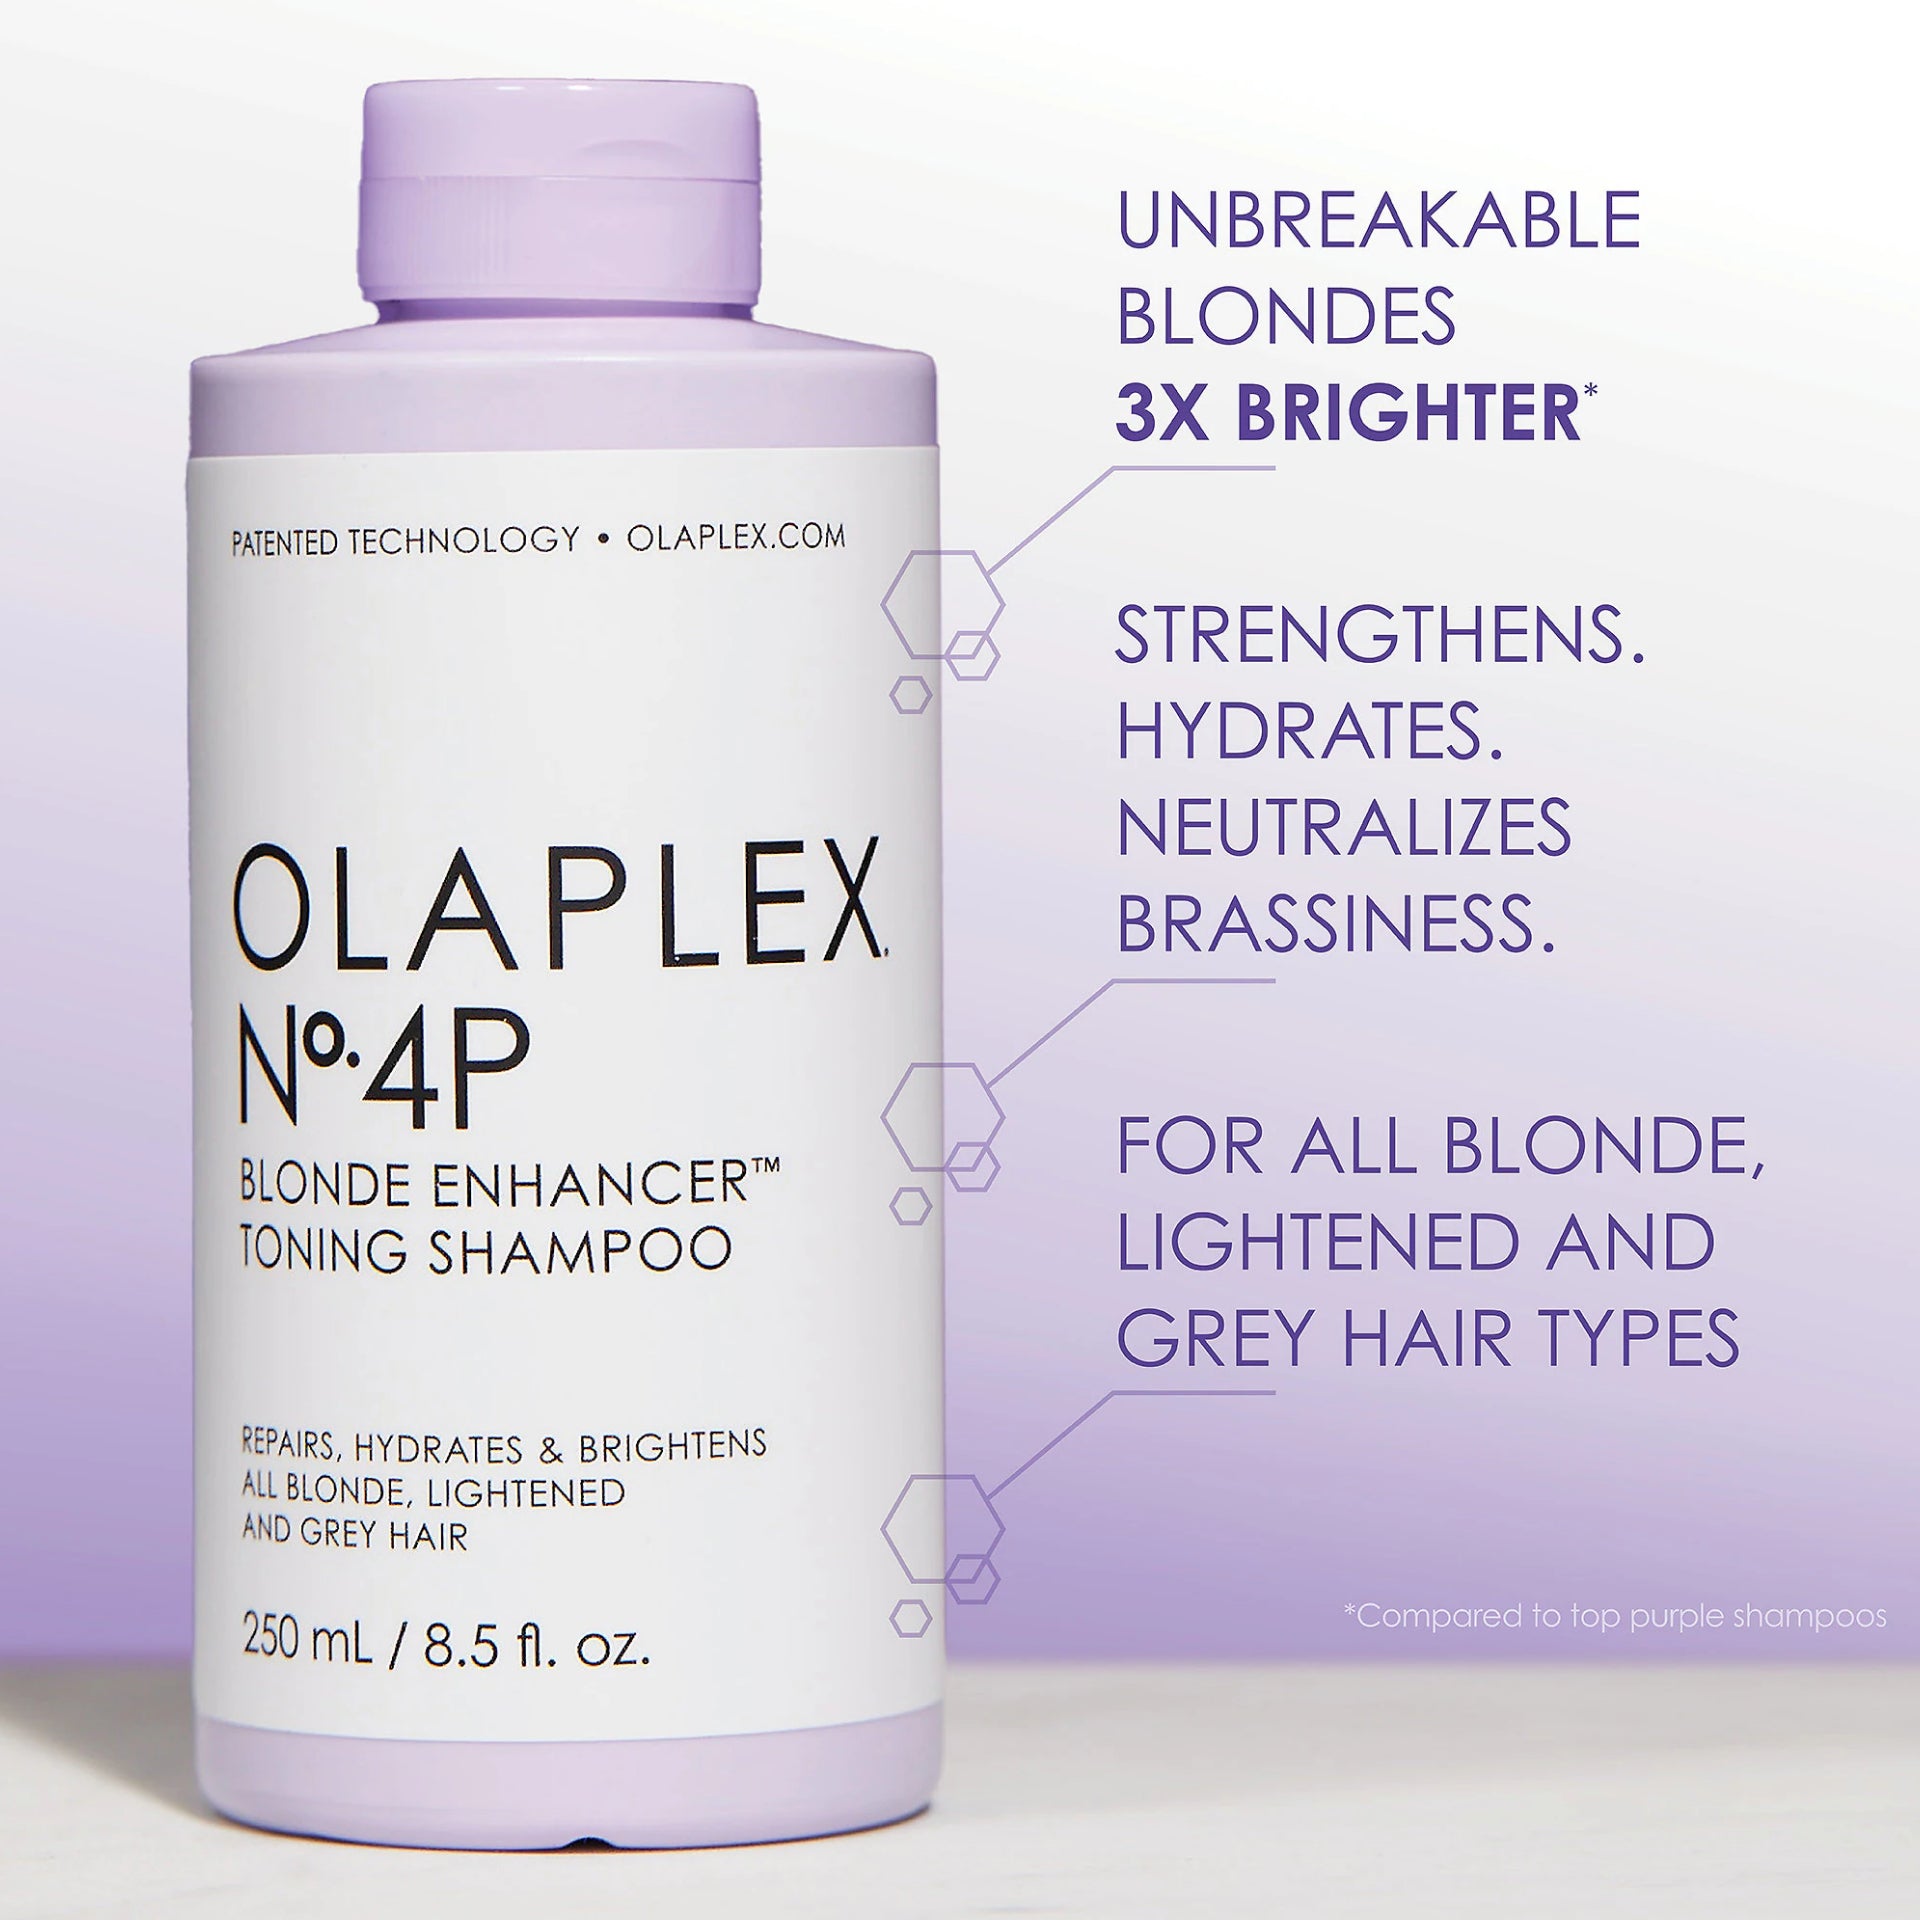 olaplex-n-4p-toning-shampoo-blond-enhancer